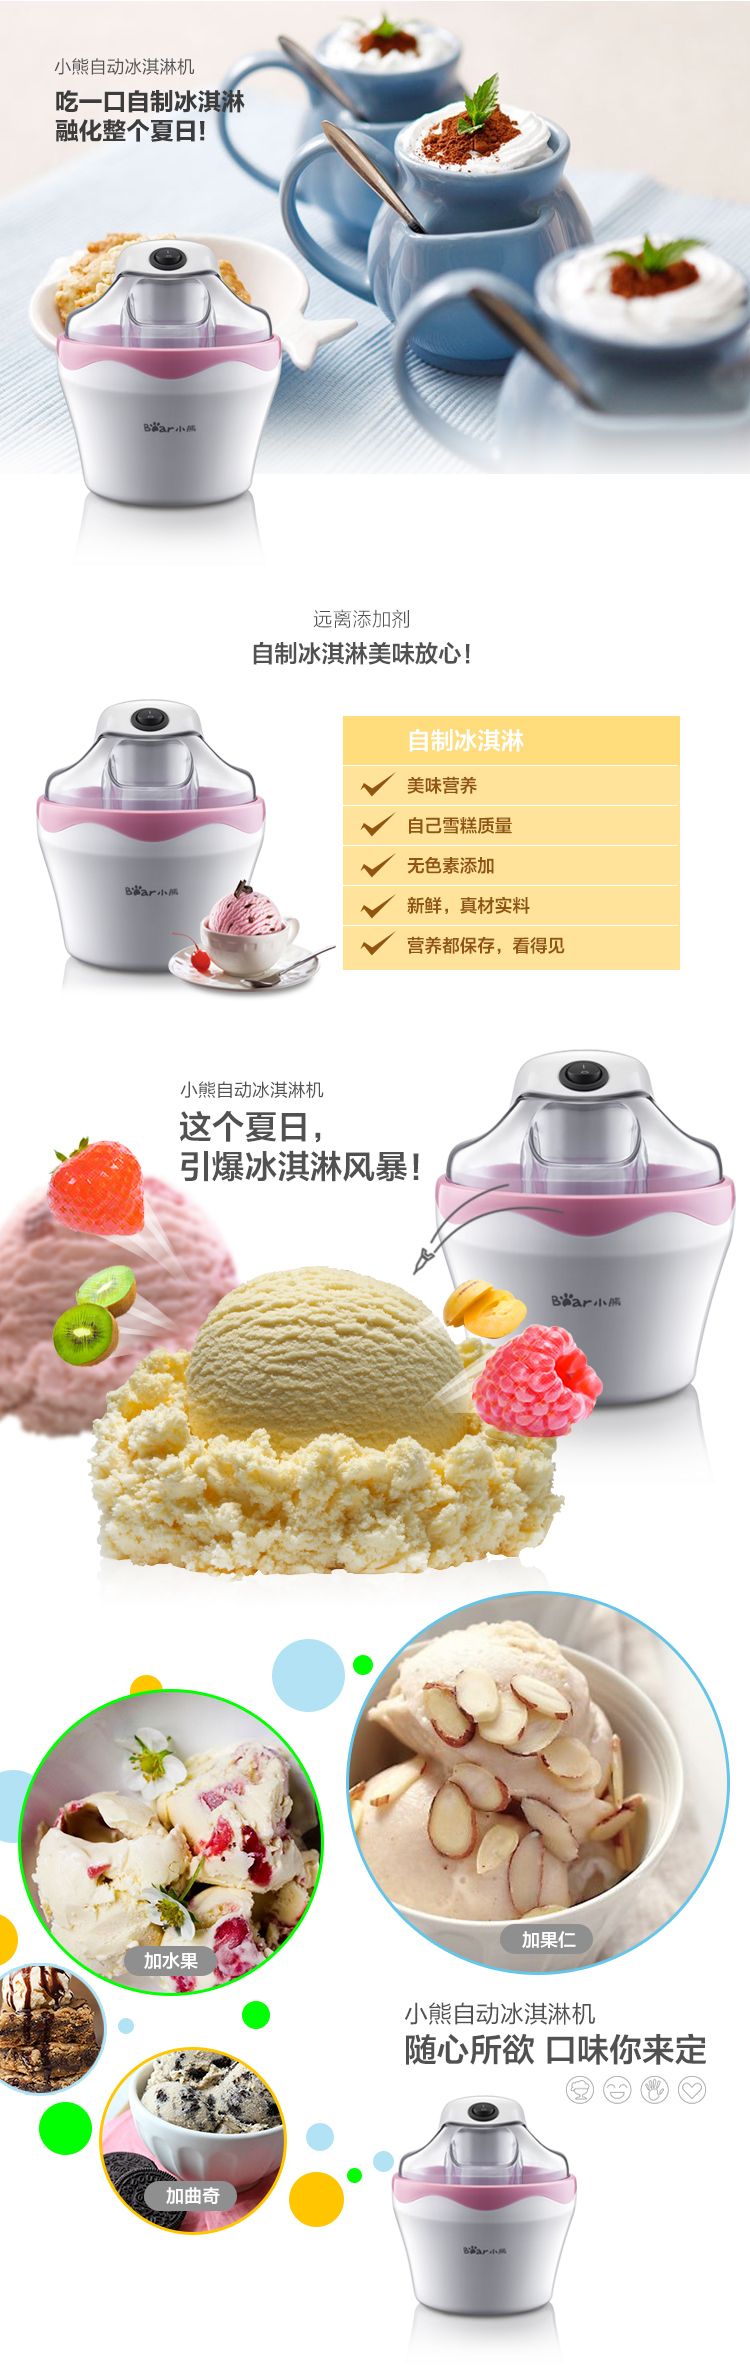 小熊/BEAR 冰淇淋机 家用全自动冰激凌机自制雪糕一键操作 0.5升 BQL-A05T1 粉色